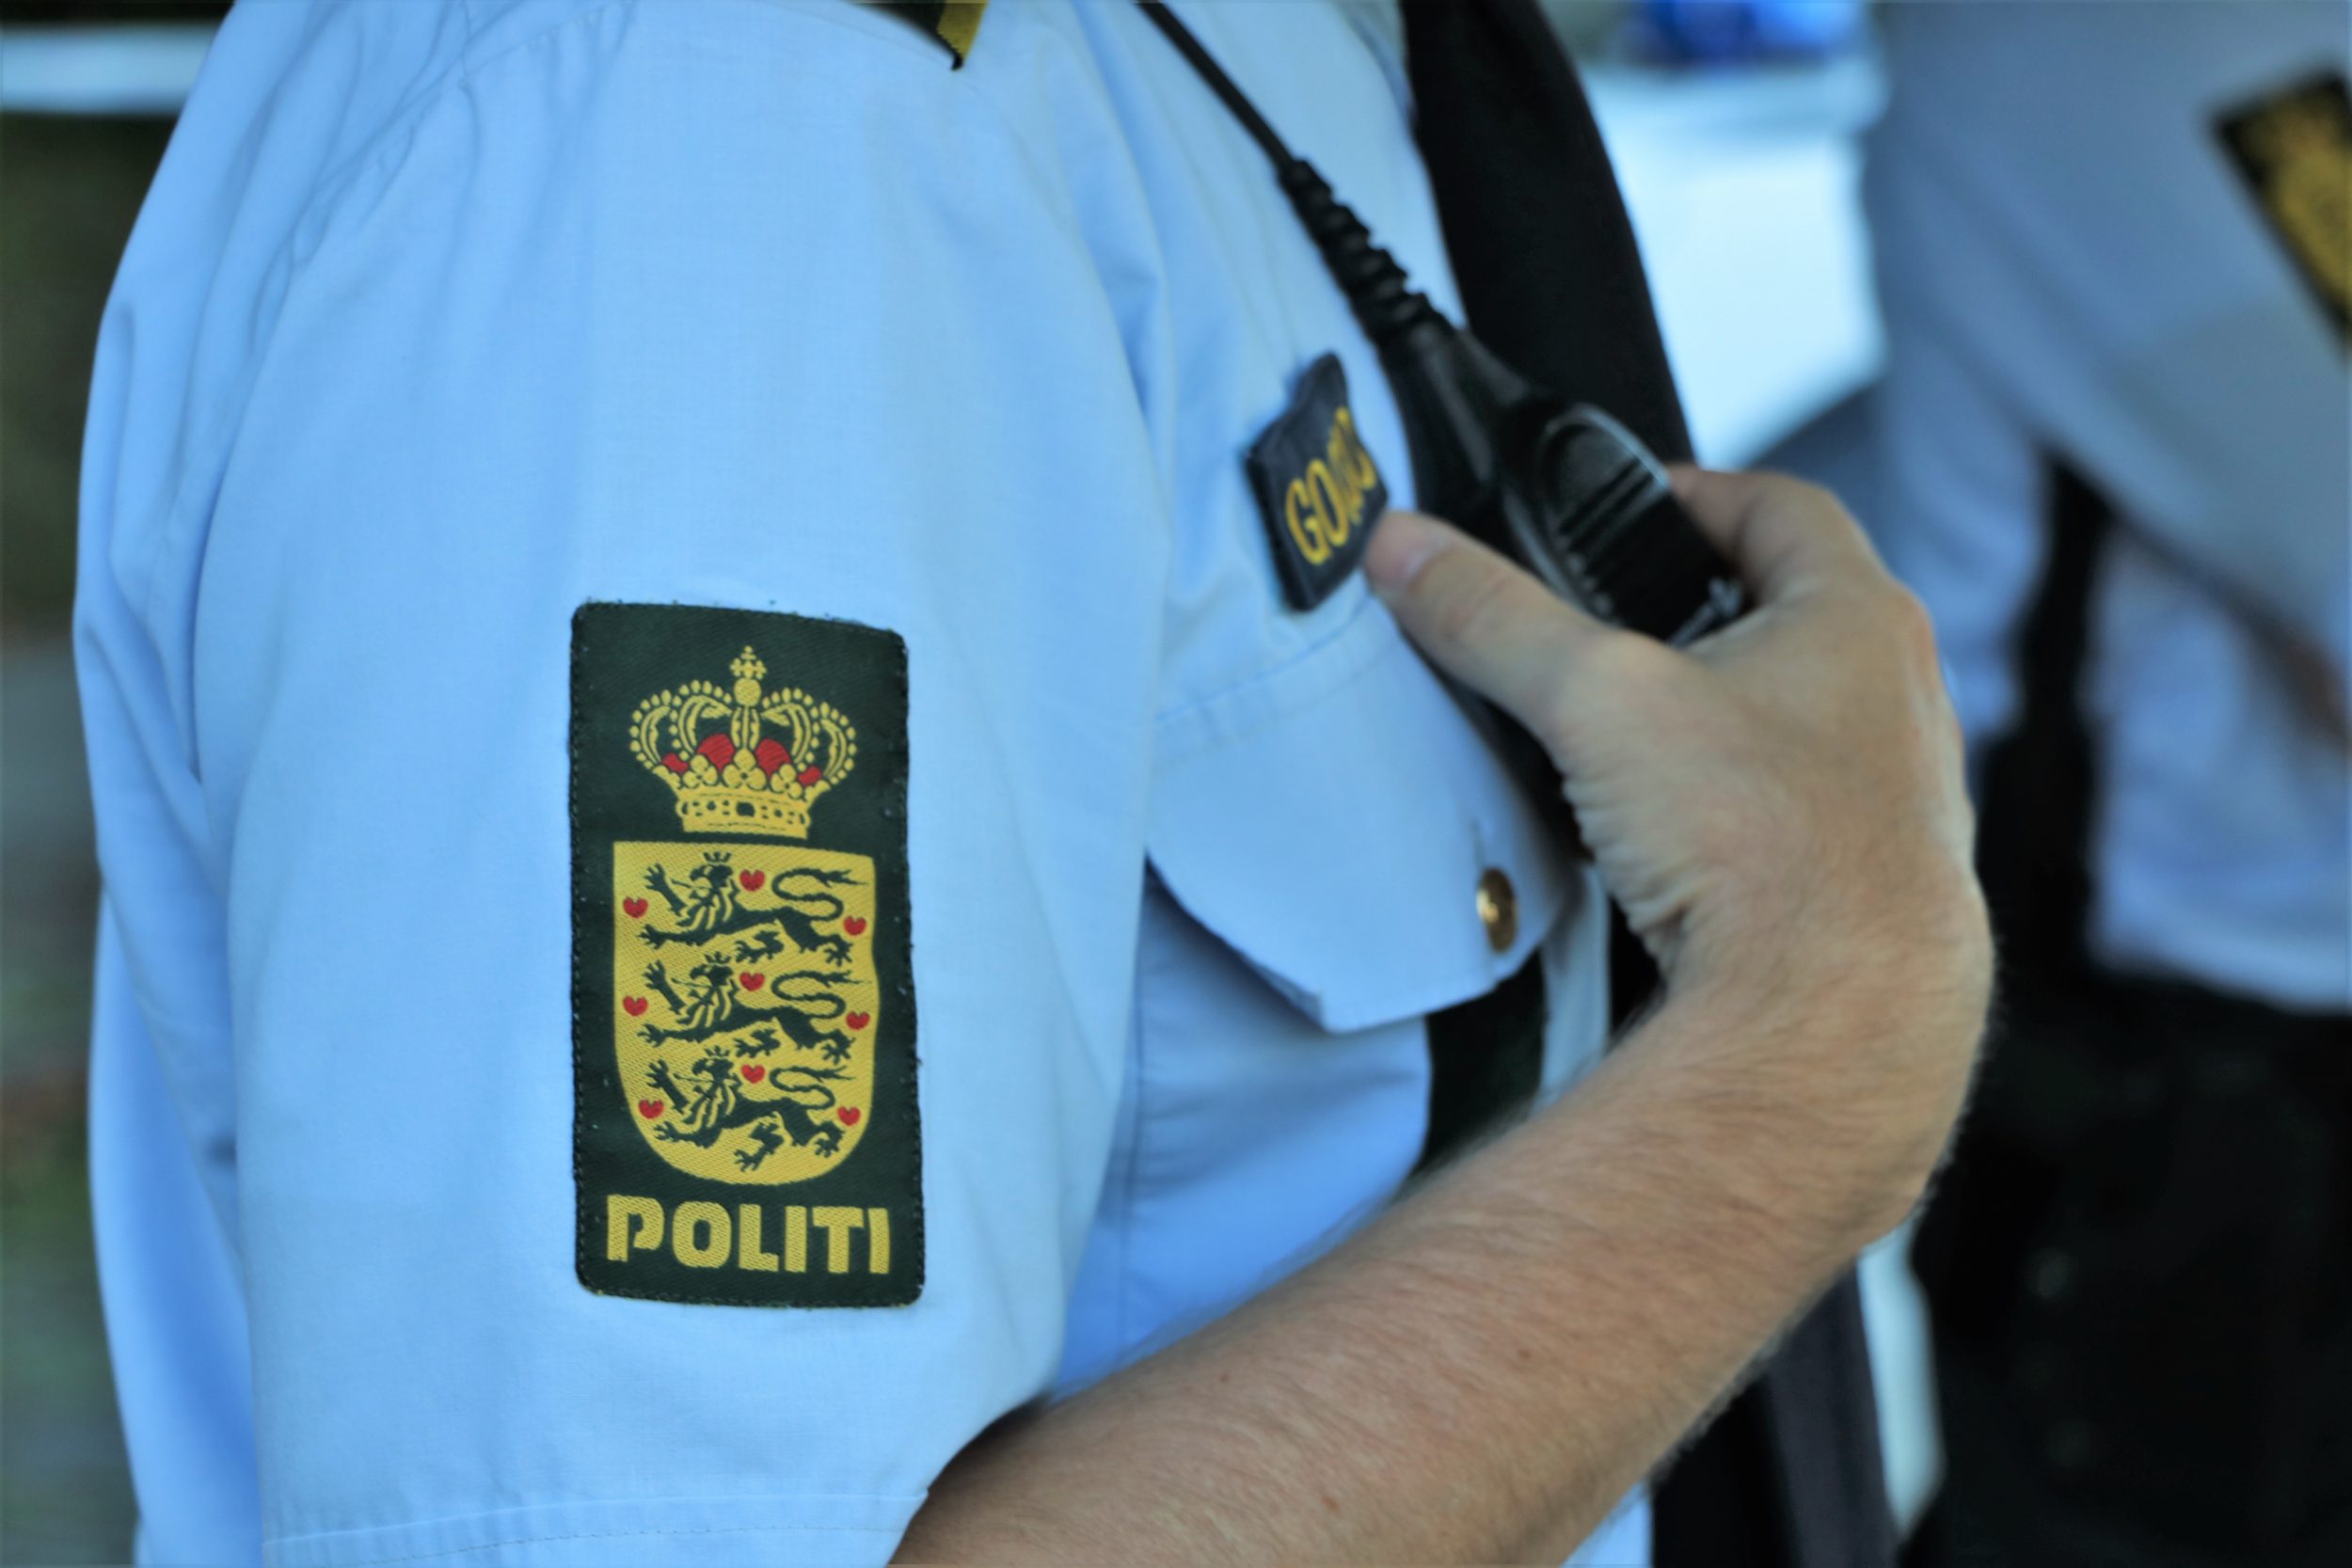 Politirapporten for Slagelse Kommune